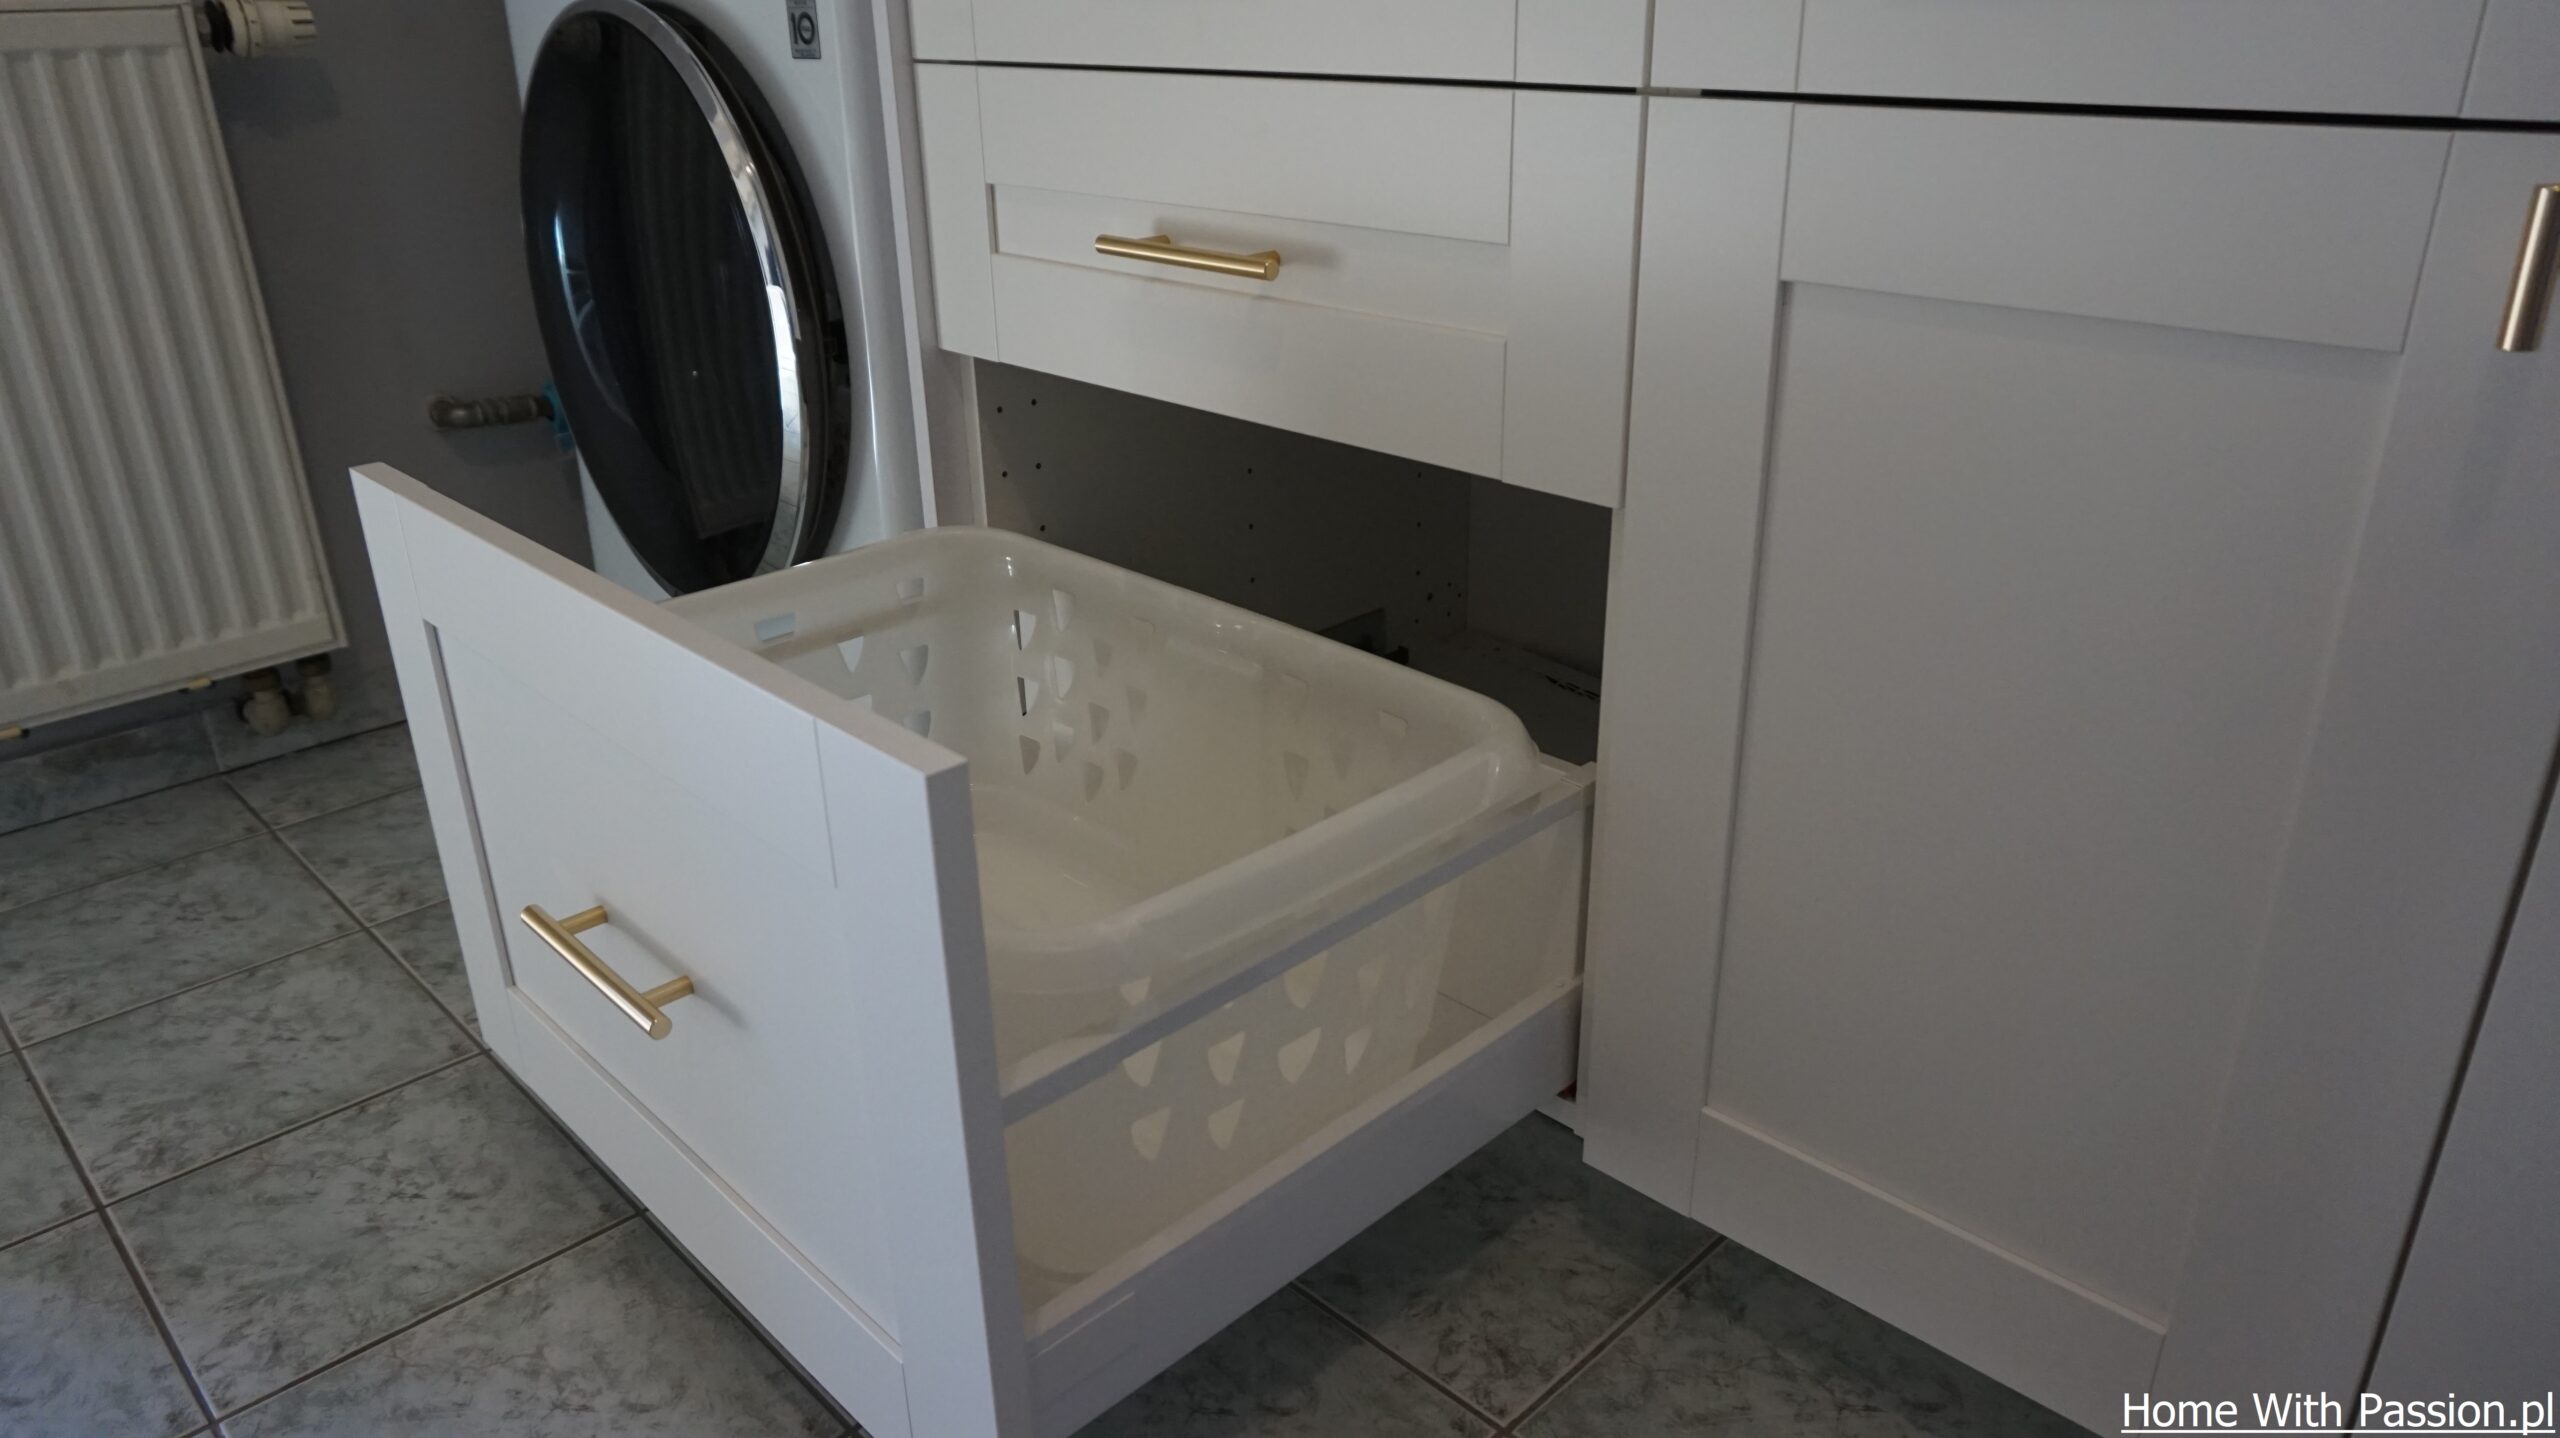 domowa pralnia - kosz na pranie w szafce